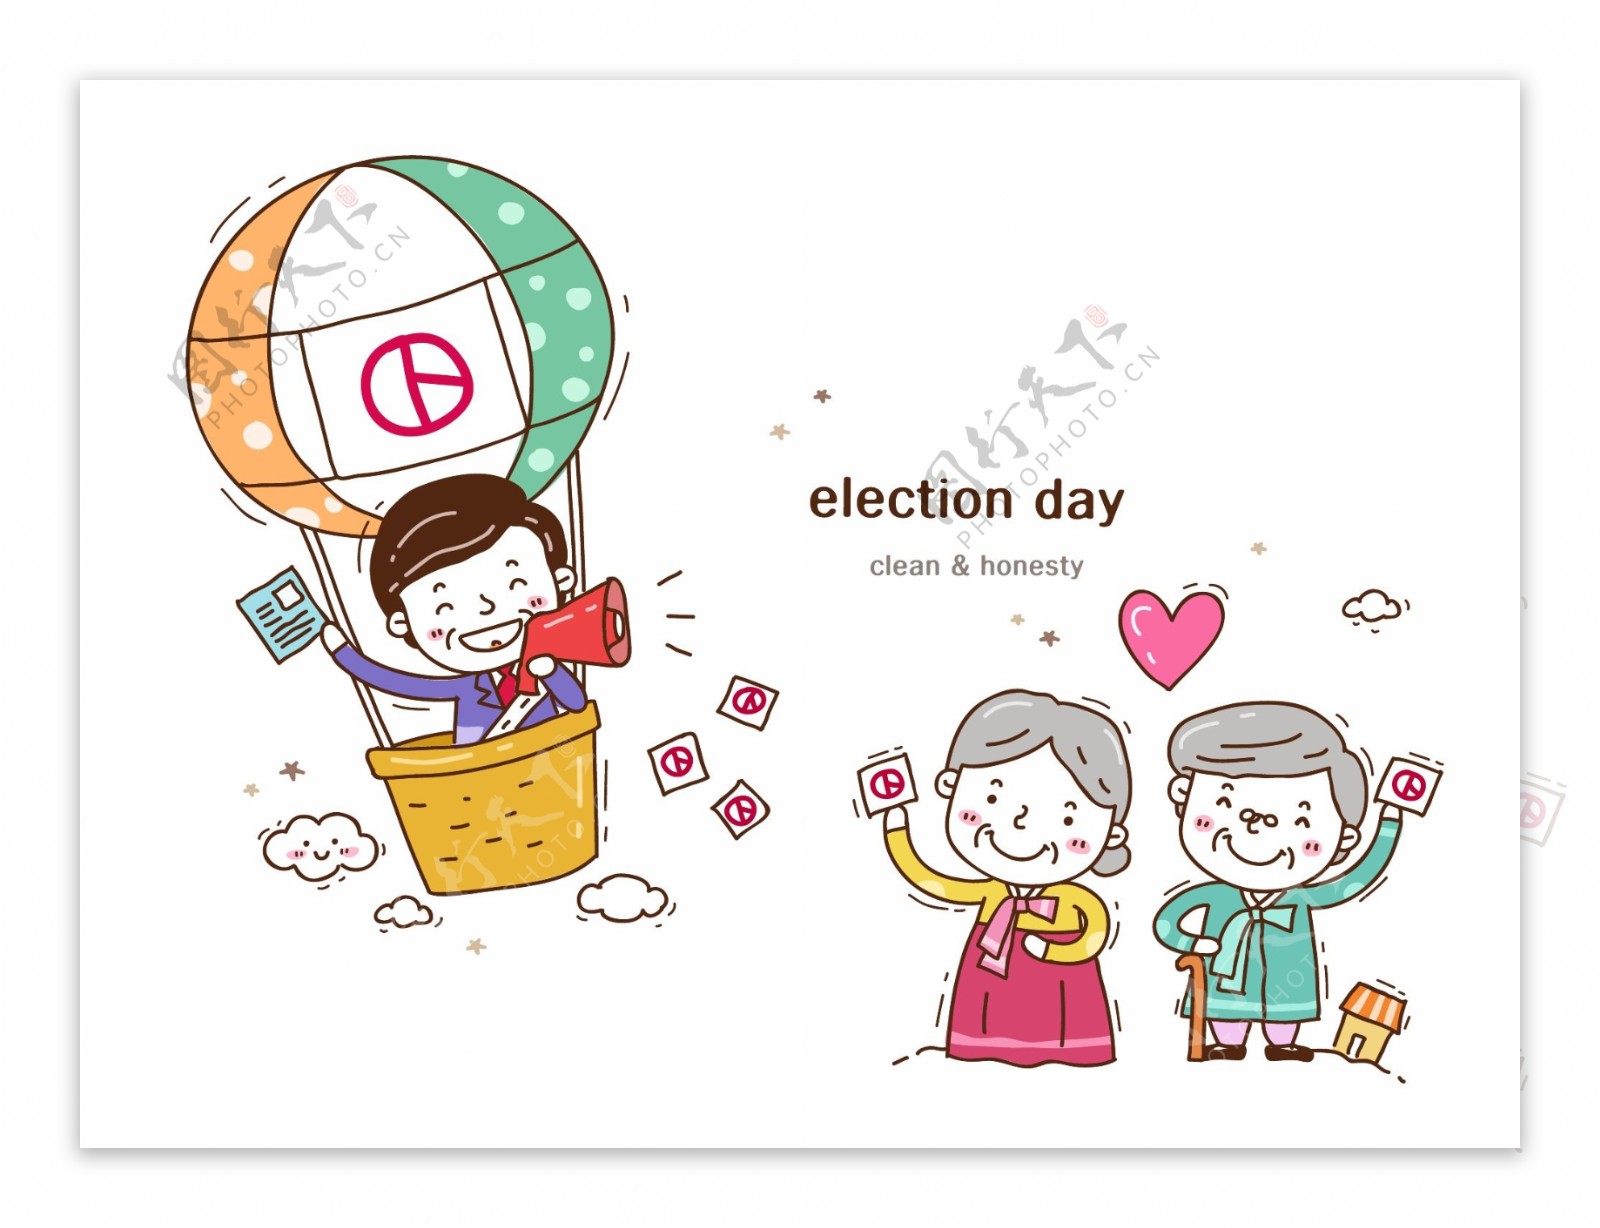 民主选举卡通人物喇叭宣传漫画矢量图